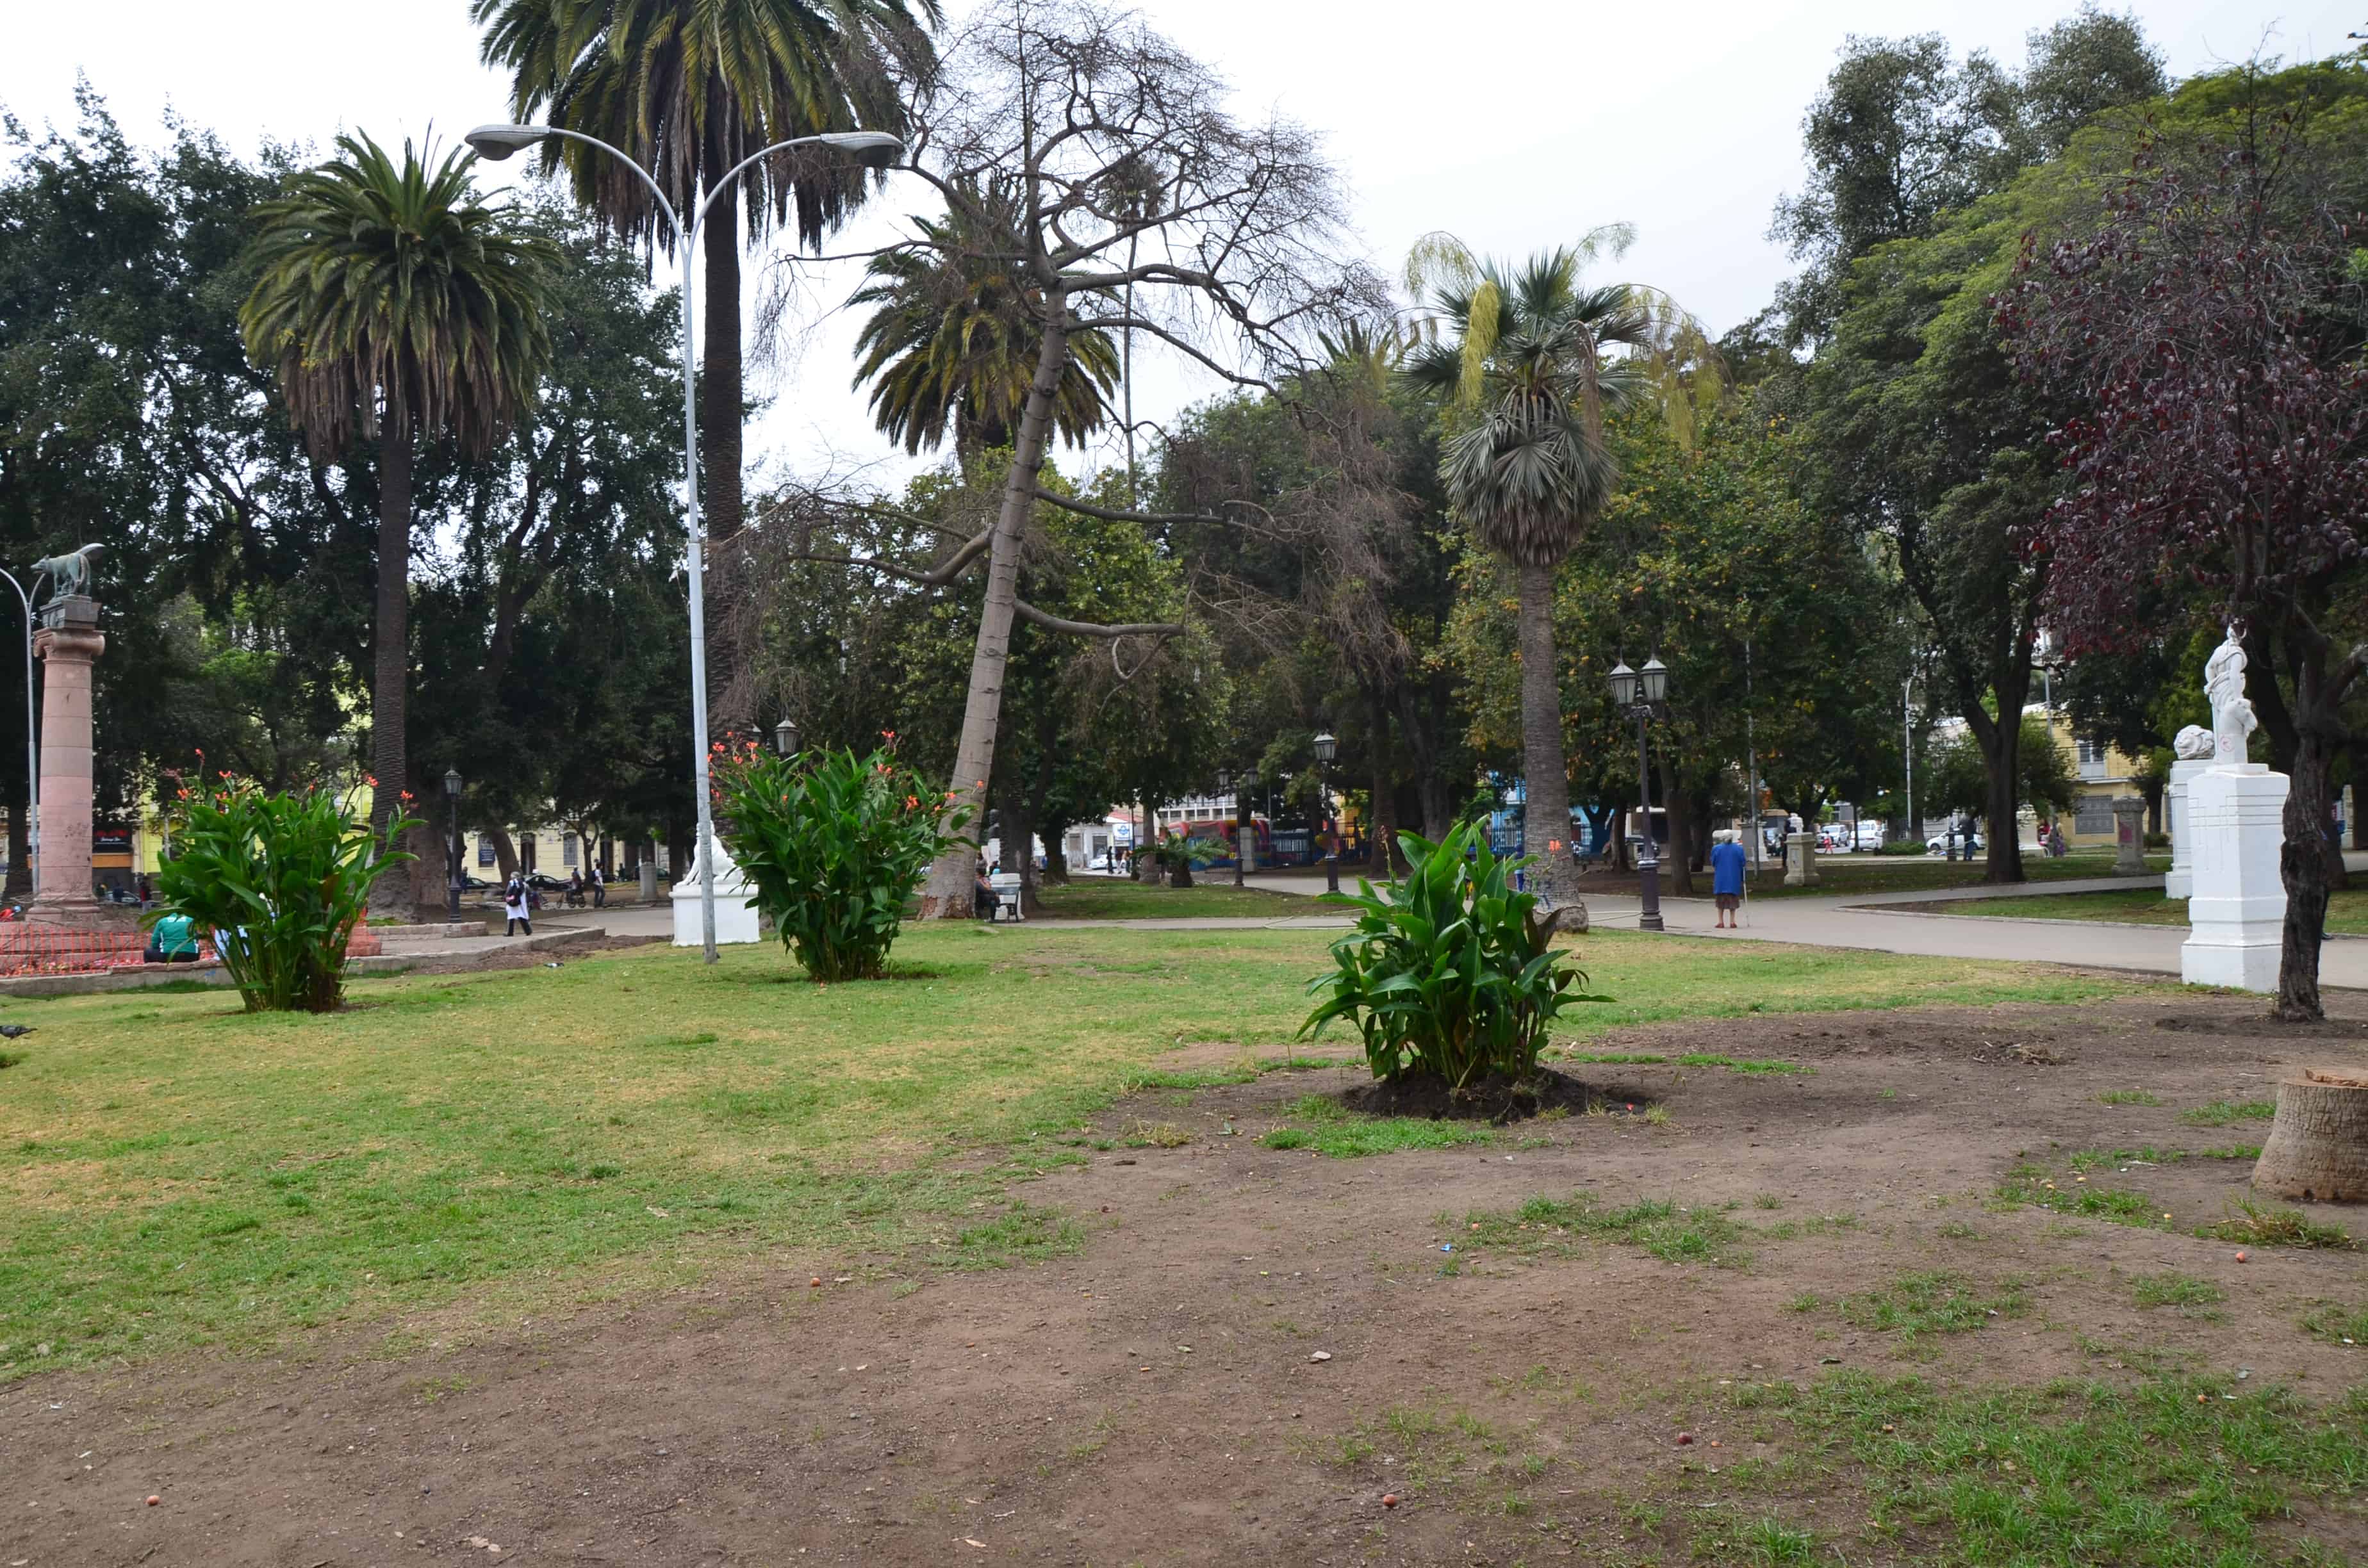 Parque Italia in Valparaíso, Chile